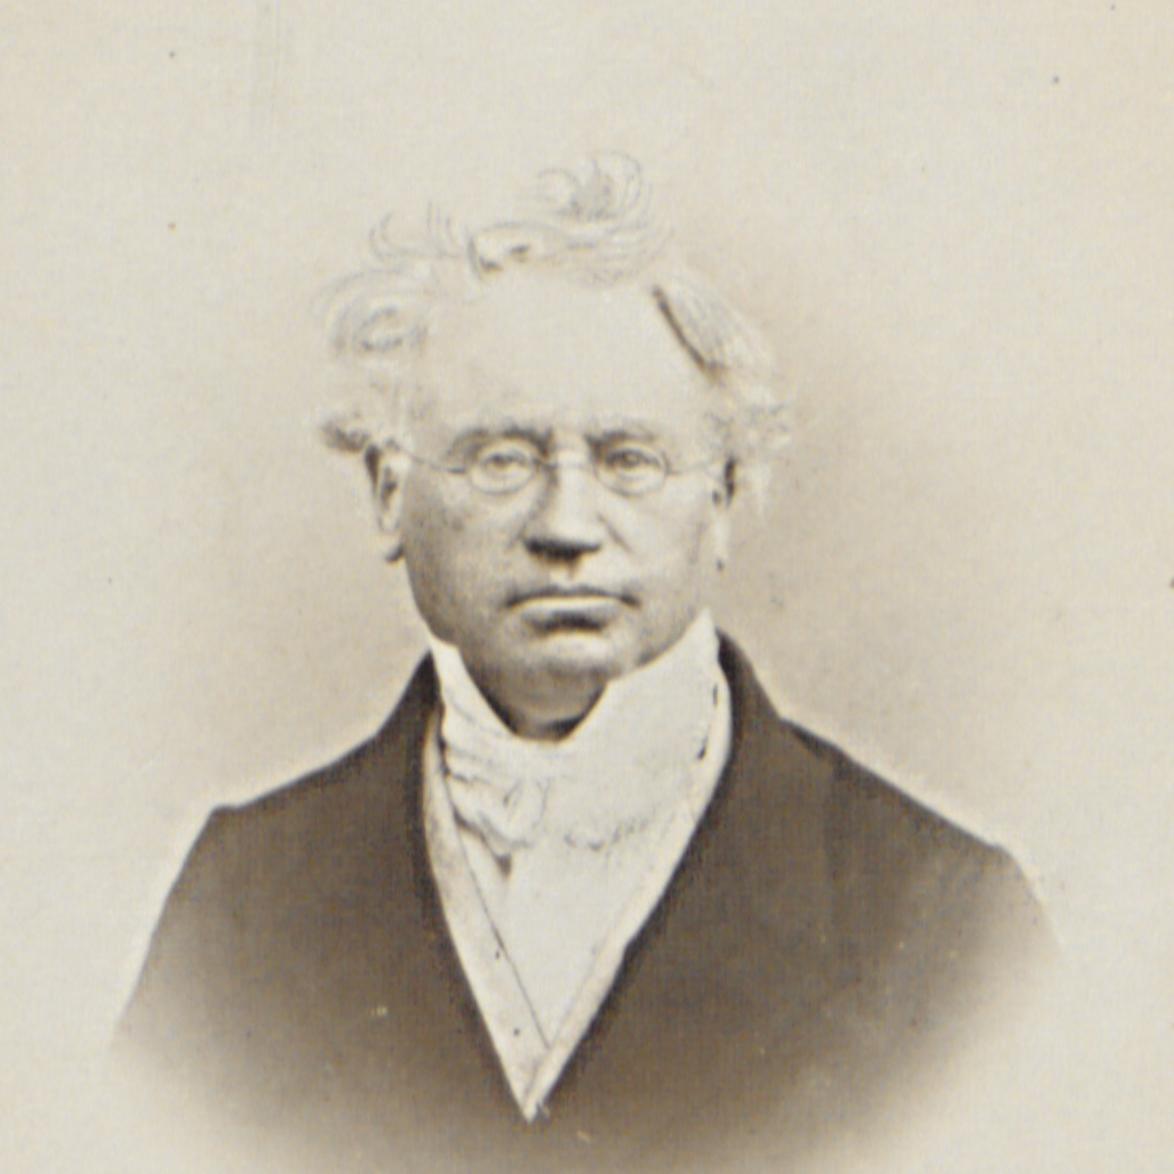 Leopold Schmid (c) Bildarchiv von Universitätsbibliothek und Universitätsarchiv Gießen